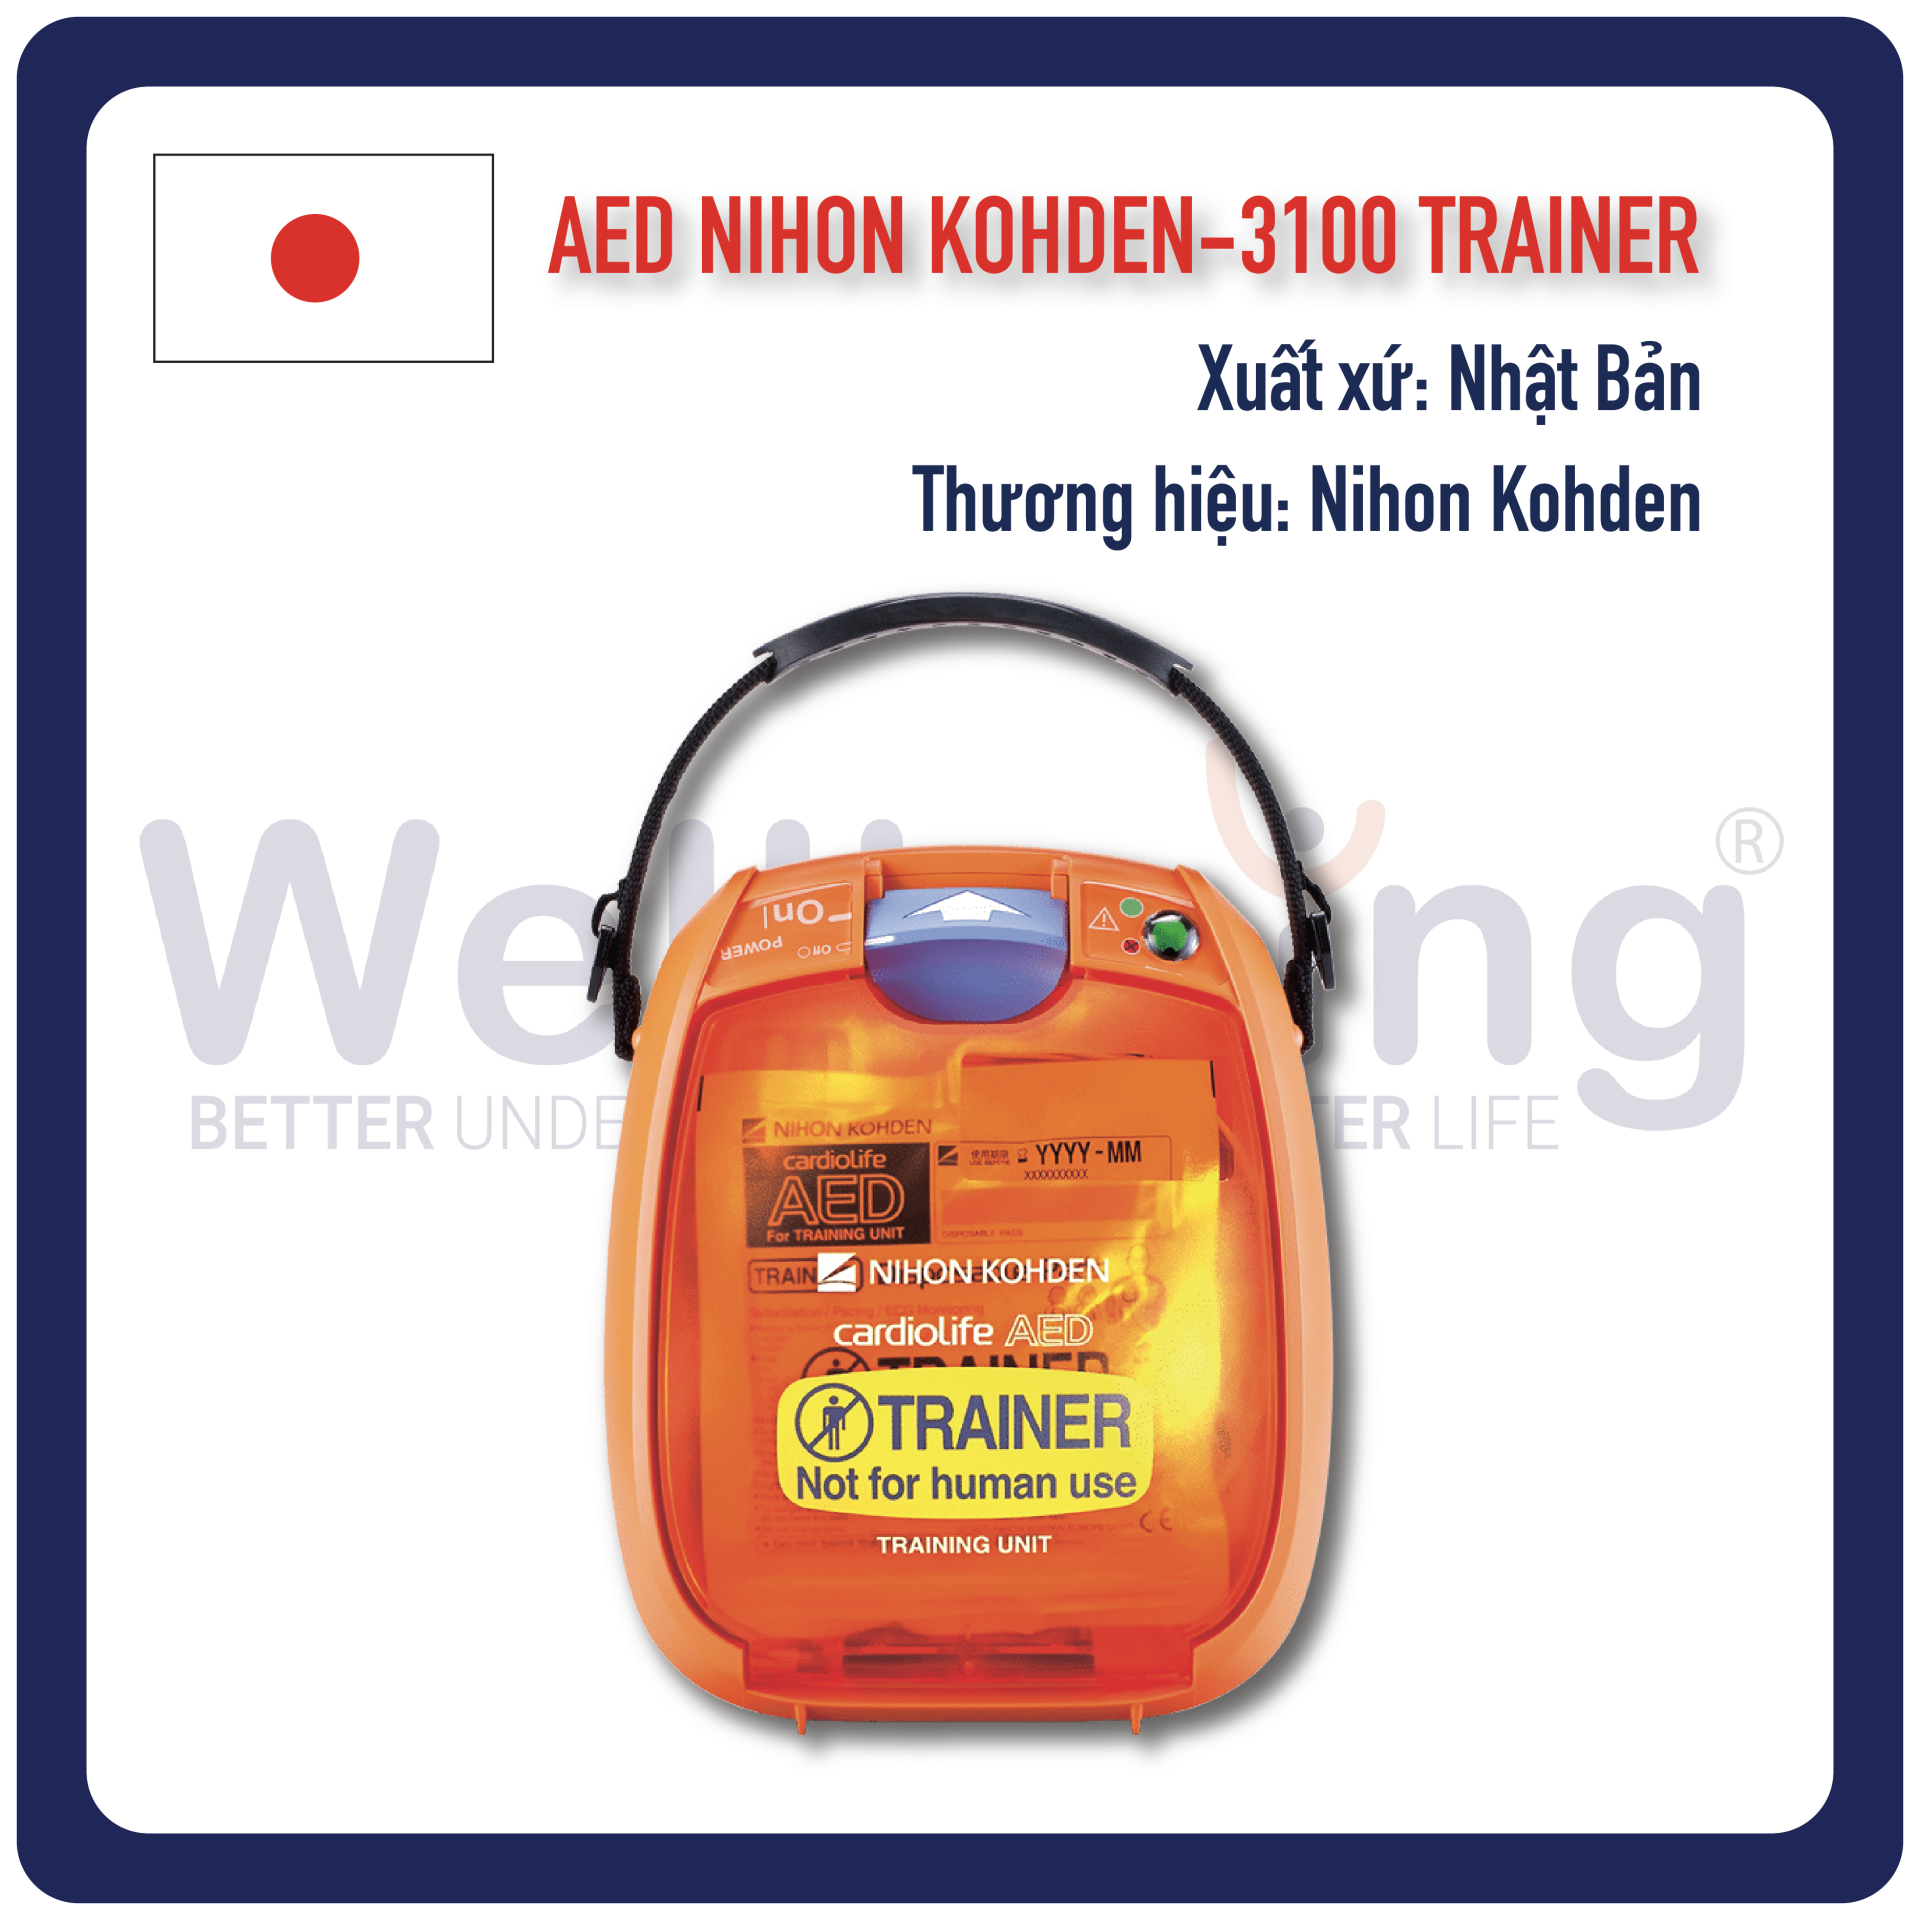 Máy AED Trainer Nihon Kohden A3100